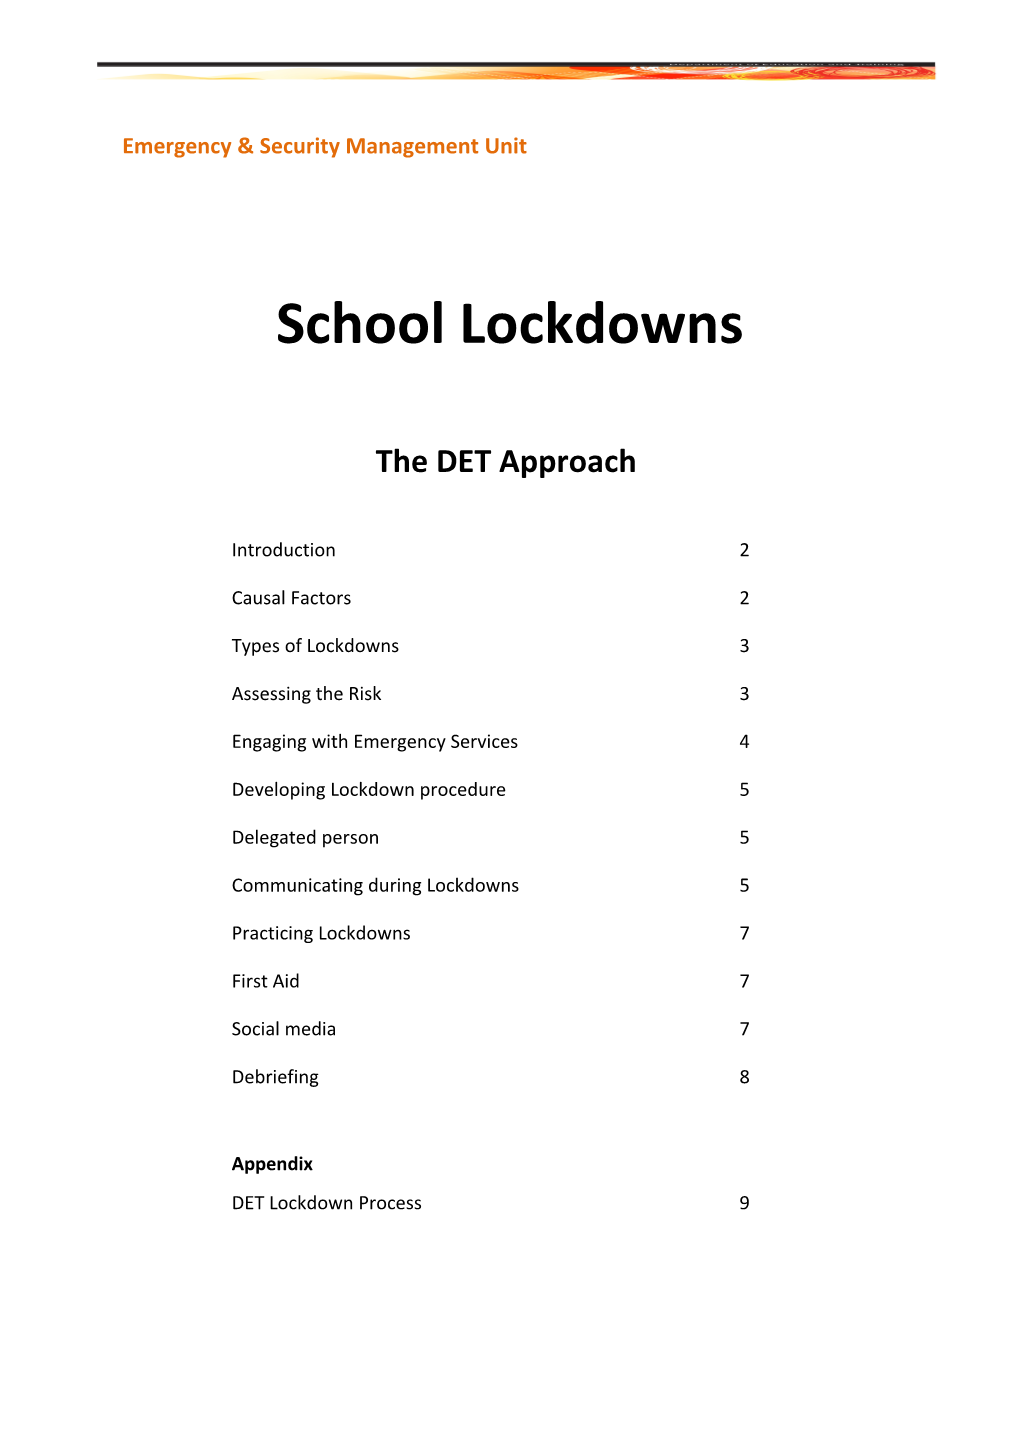 DET Approach to School Lockdowns